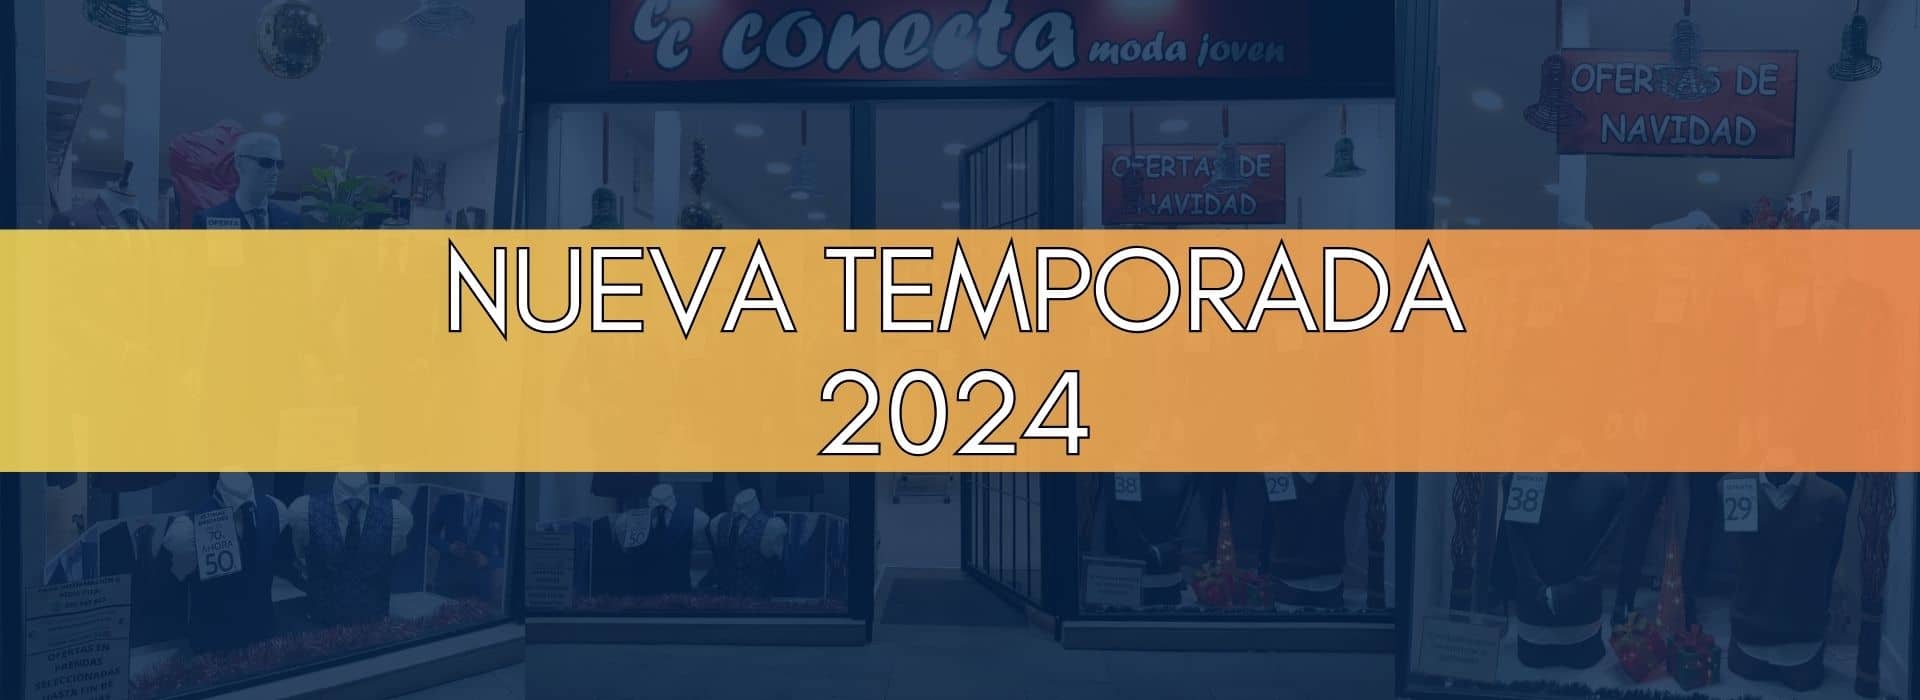 Nueva Temporada 2024 - Conecta Moda Joven Granada